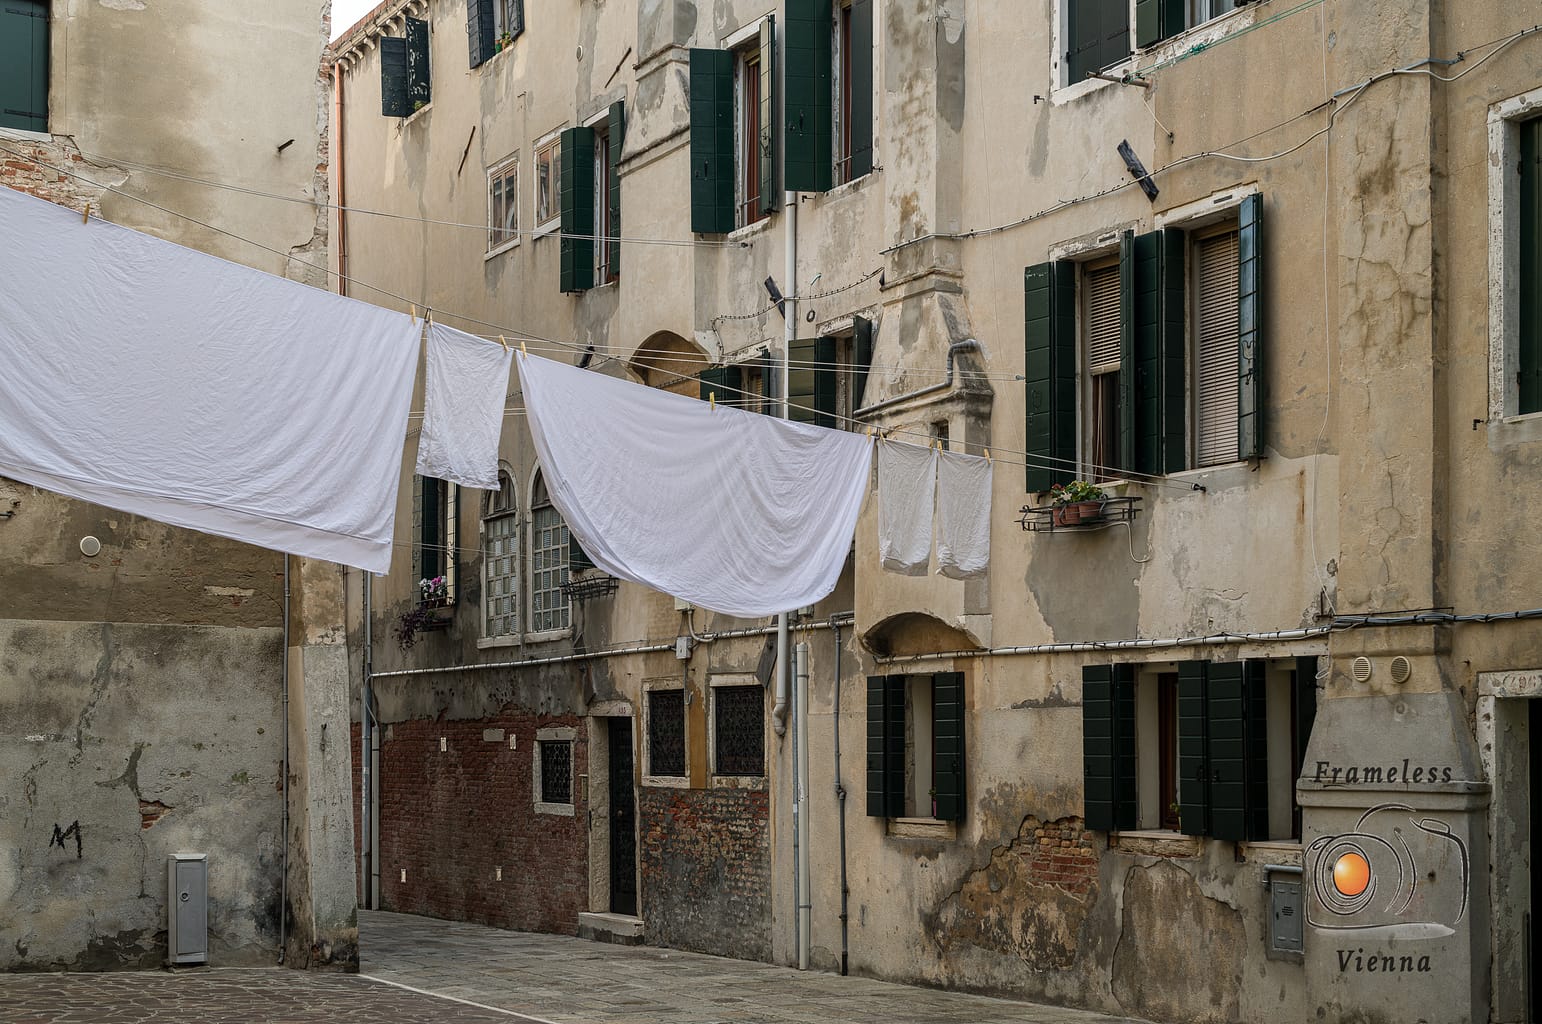 Wäsche zum Trocknen zwischen alten Häusern in Venedig.